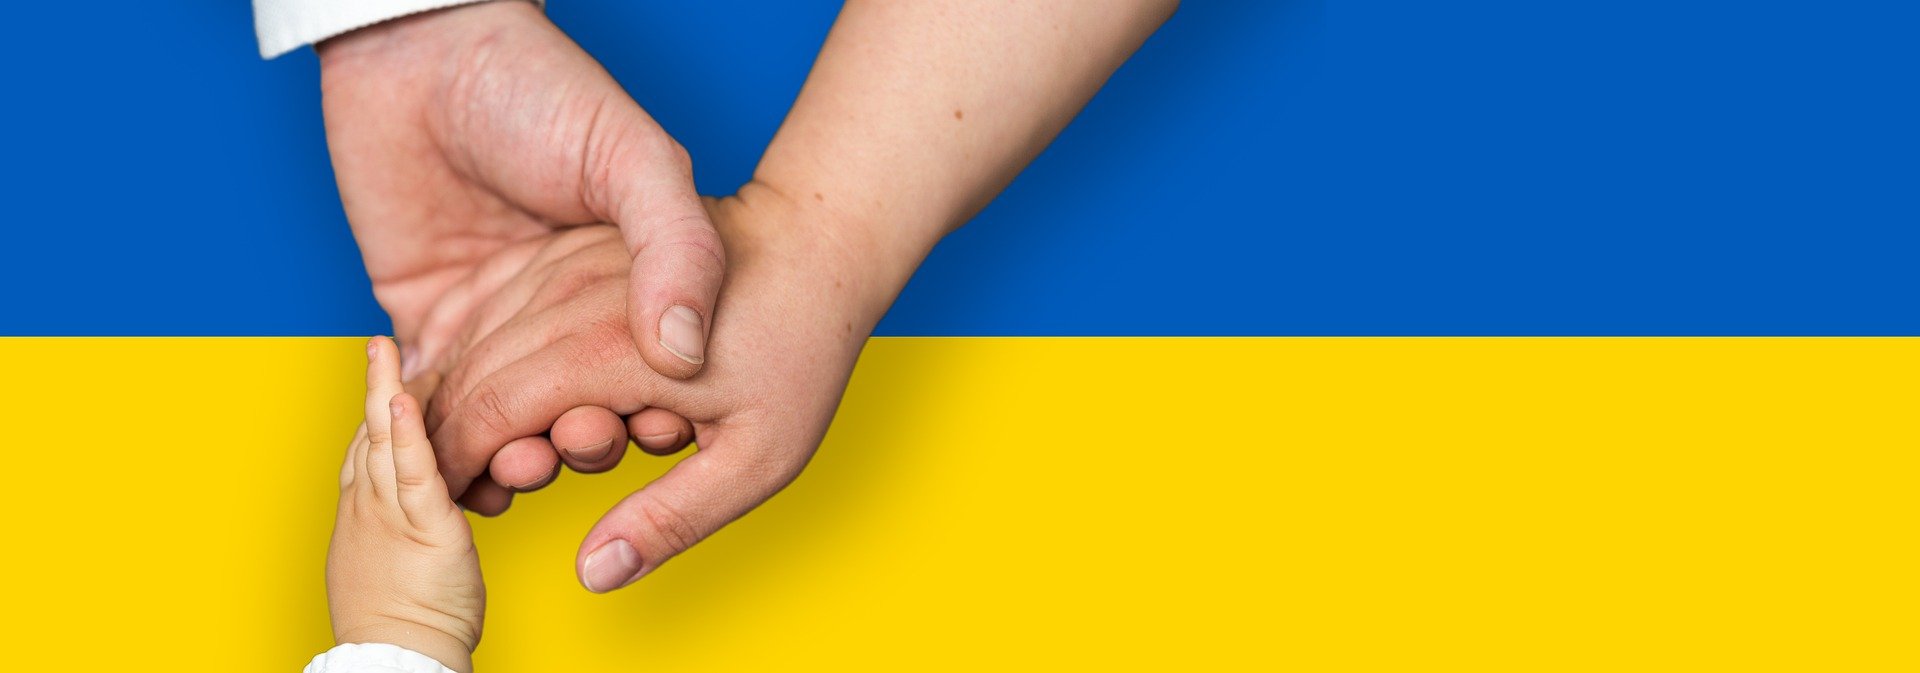 Disponibilità all’accoglienza di profughi provenienti dall’Ucraina